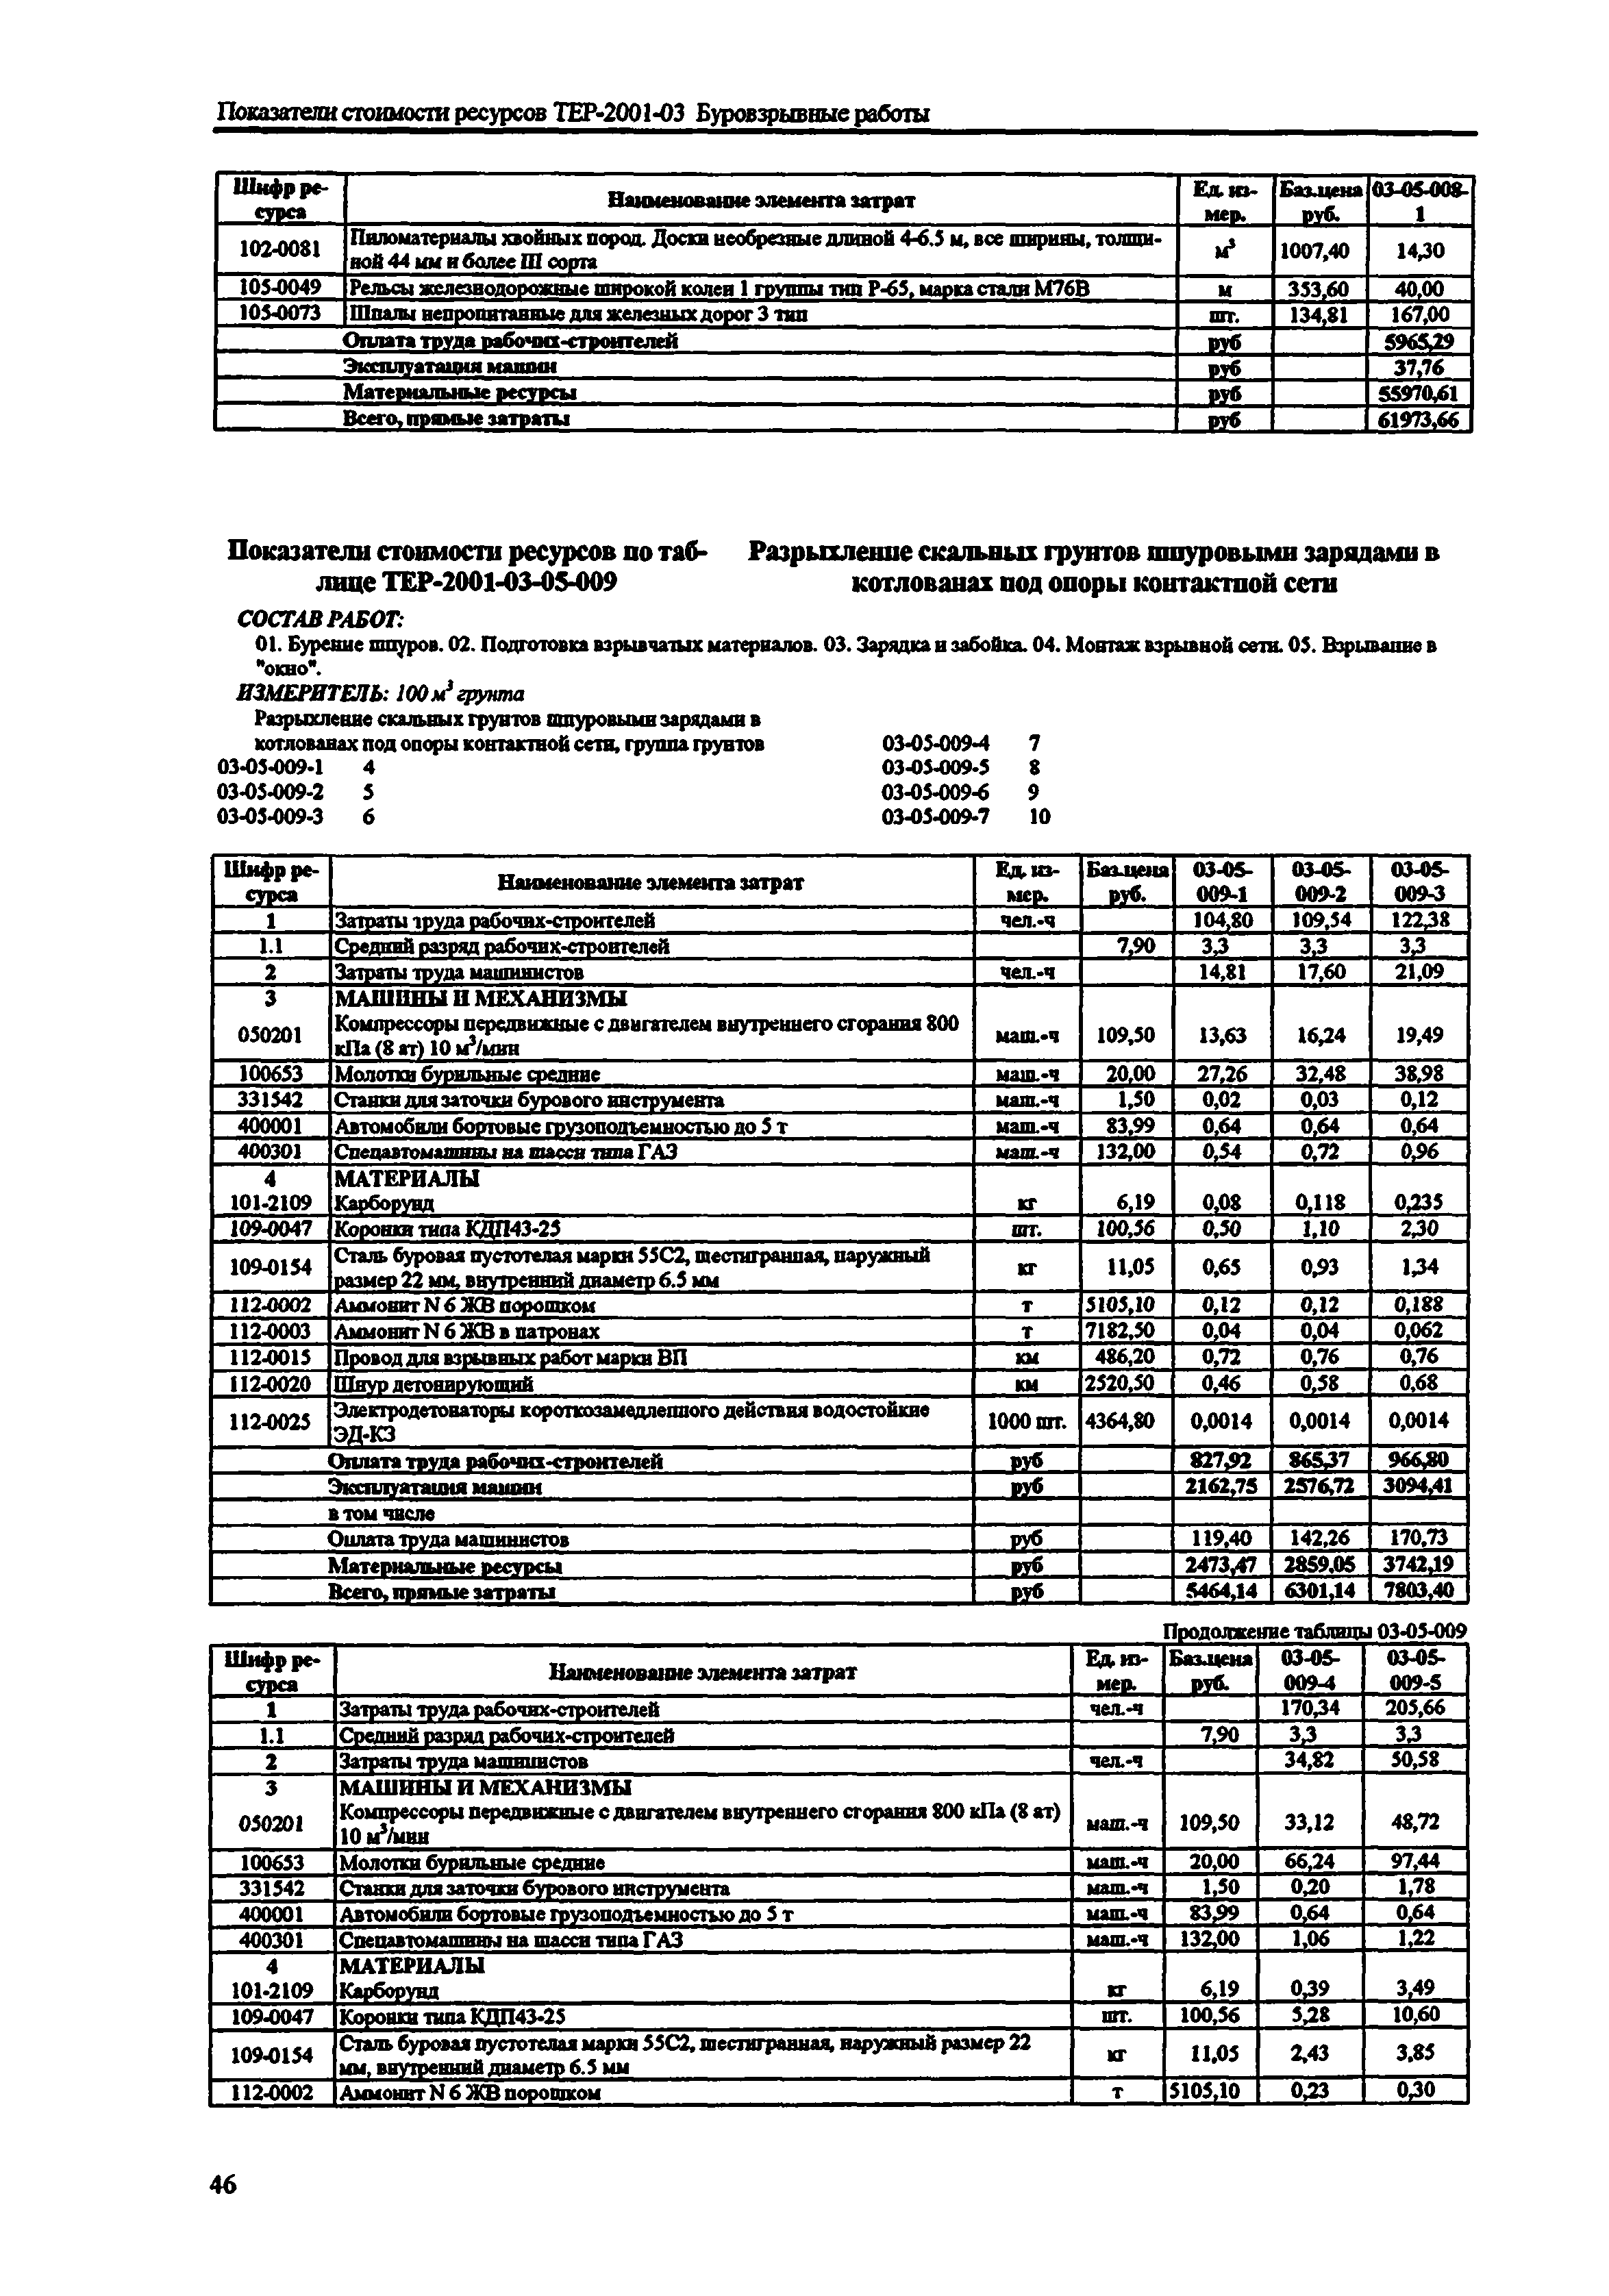 Справочное пособие к ТЕР 81-02-03-2001